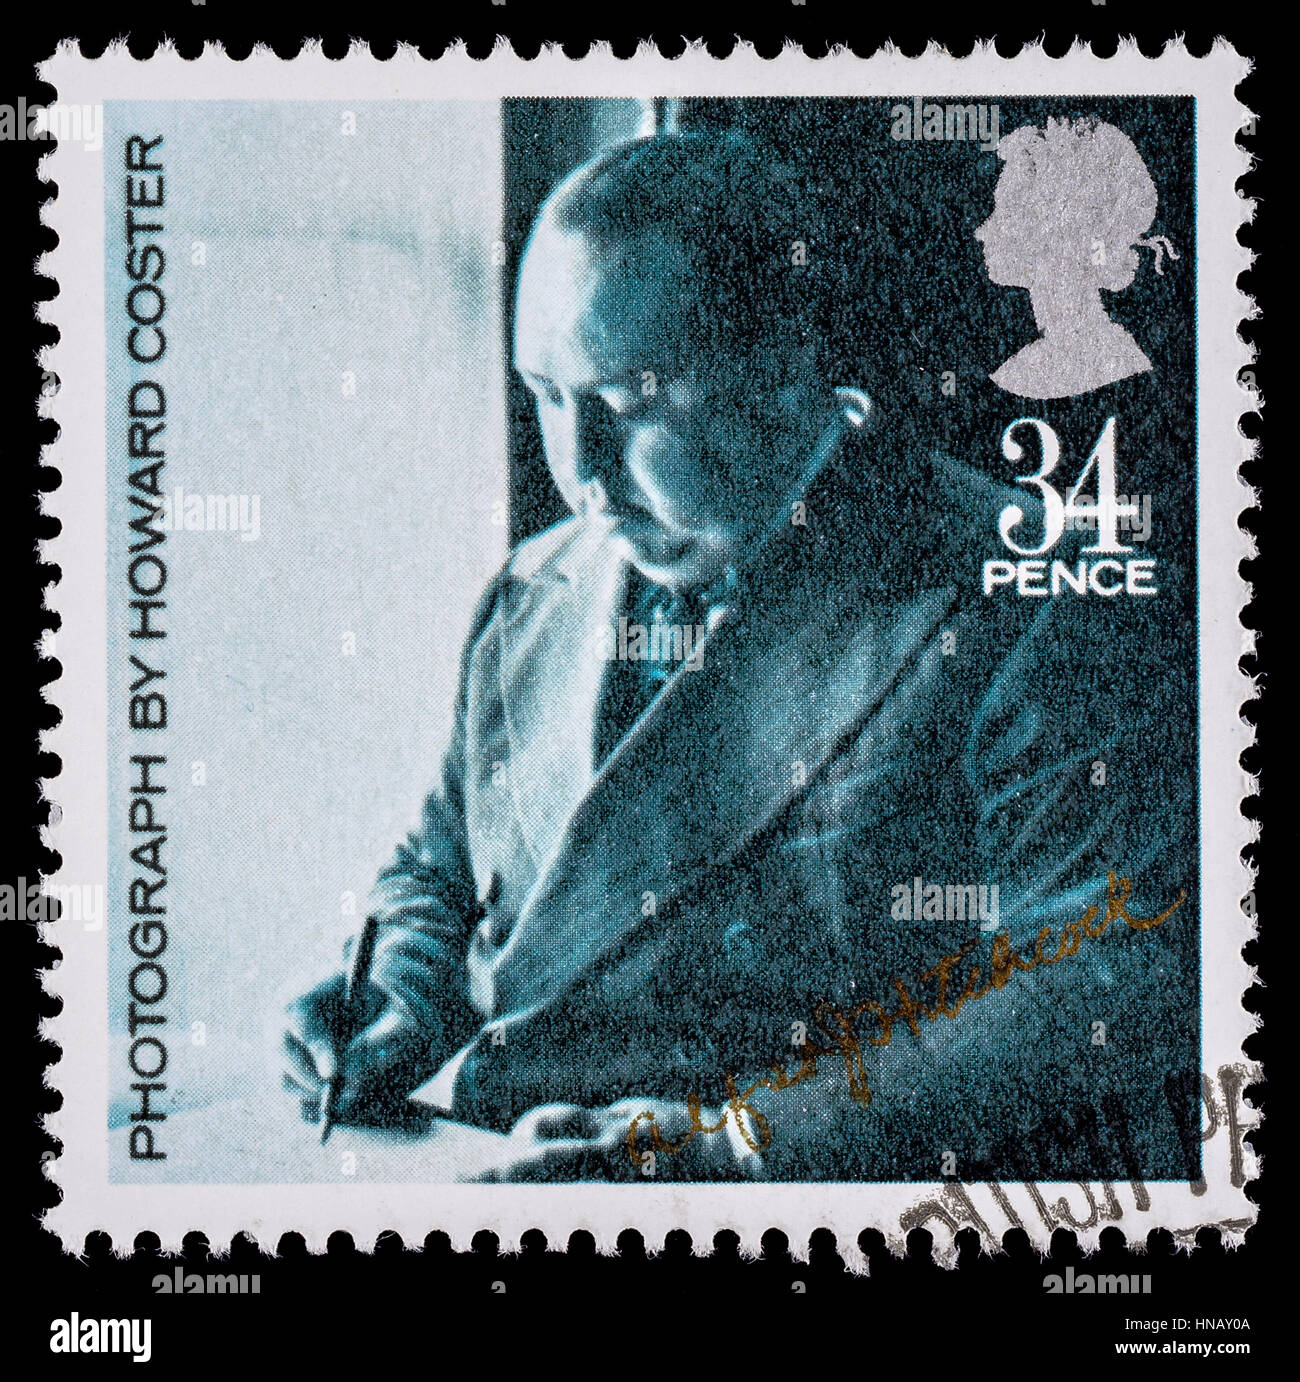 Royaume-uni - circa 1985 : un timbre-poste imprimé utilisé en Grande-Bretagne pour célébrer l'année du Film Britannique montrant film célèbre réalisateur Alfred Hitchcock Banque D'Images